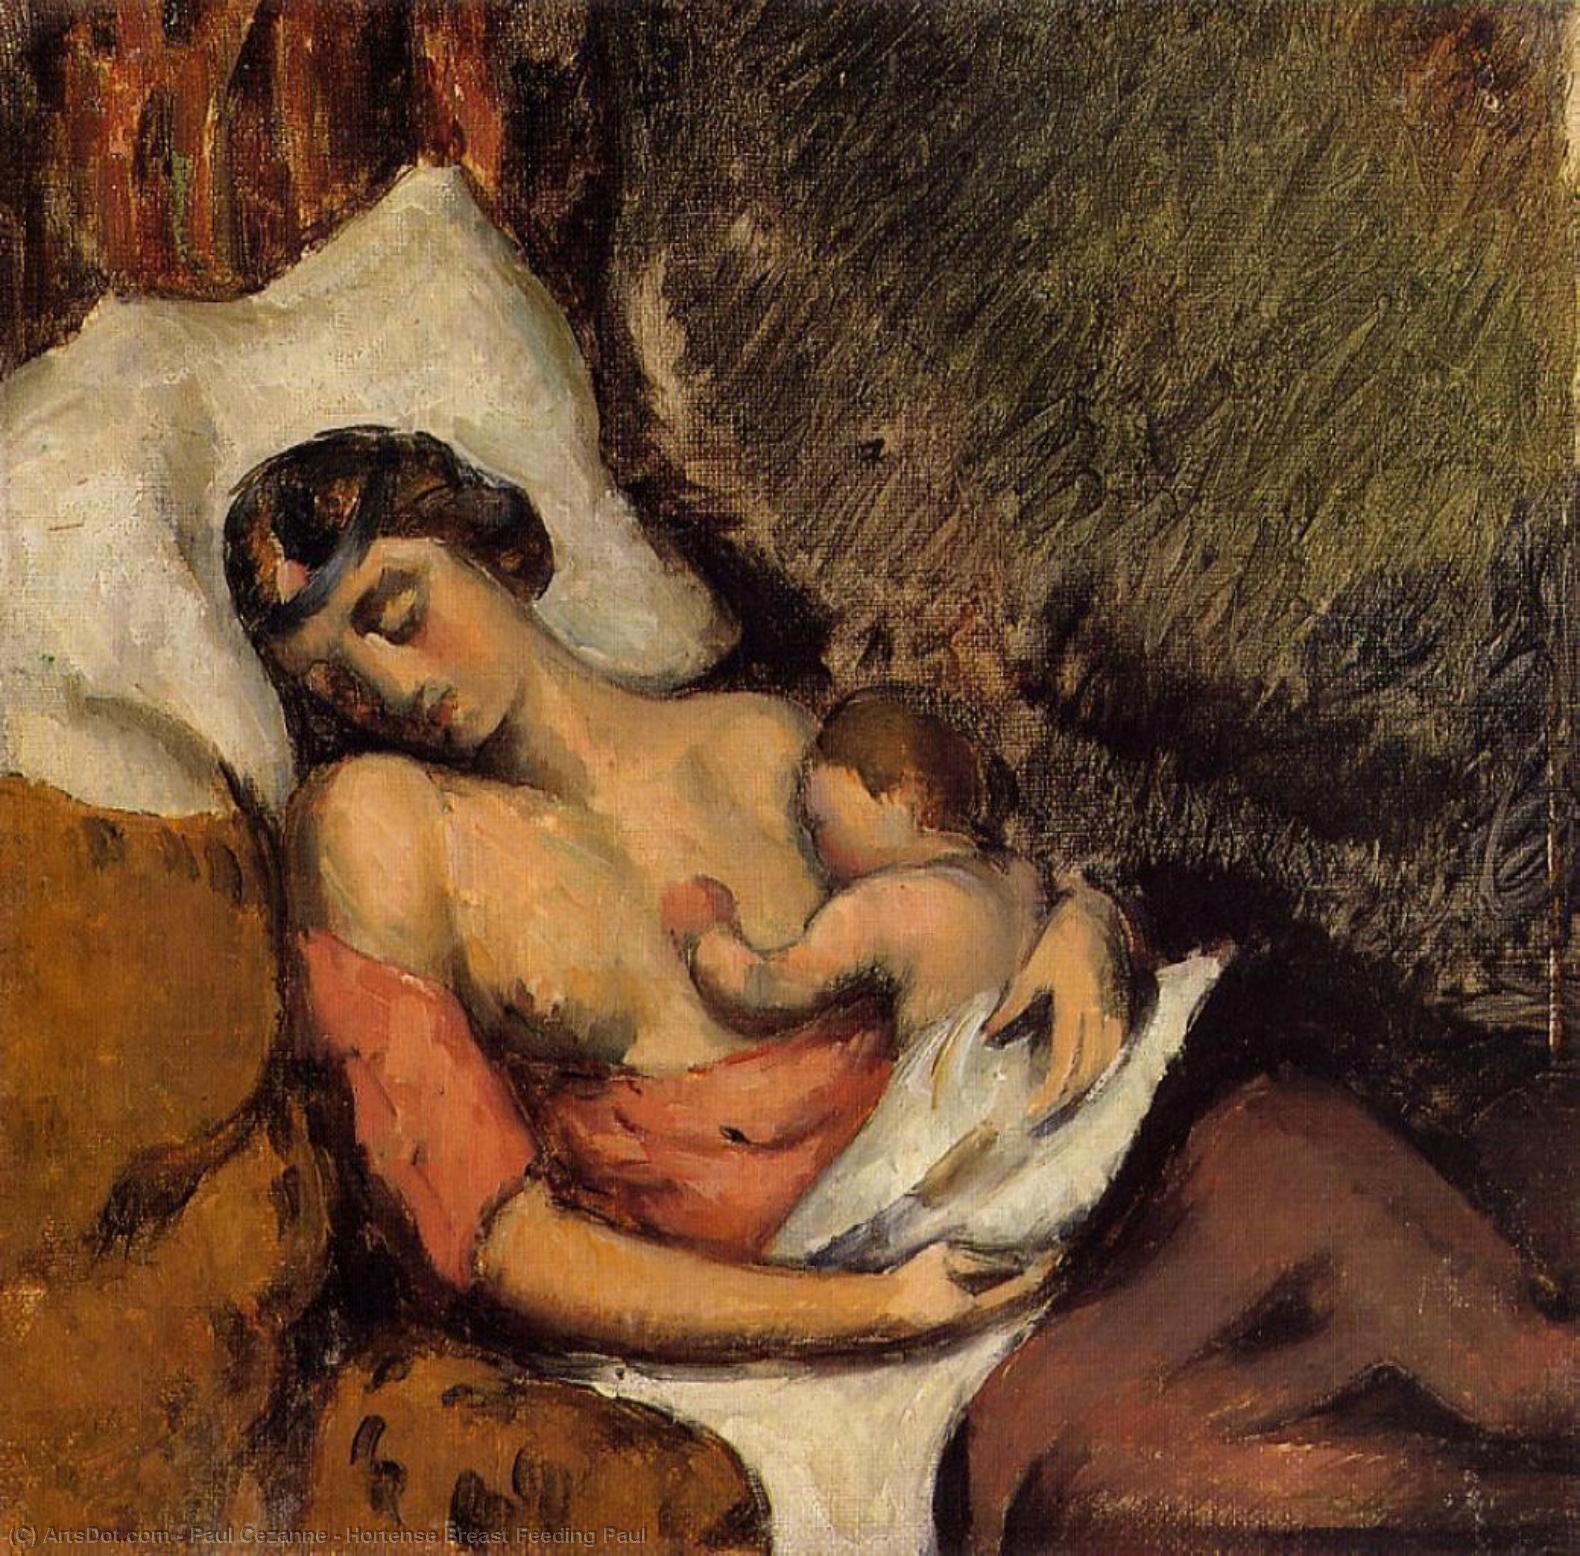 WikiOO.org - Encyclopedia of Fine Arts - Maleri, Artwork Paul Cezanne - Hortense Breast Feeding Paul